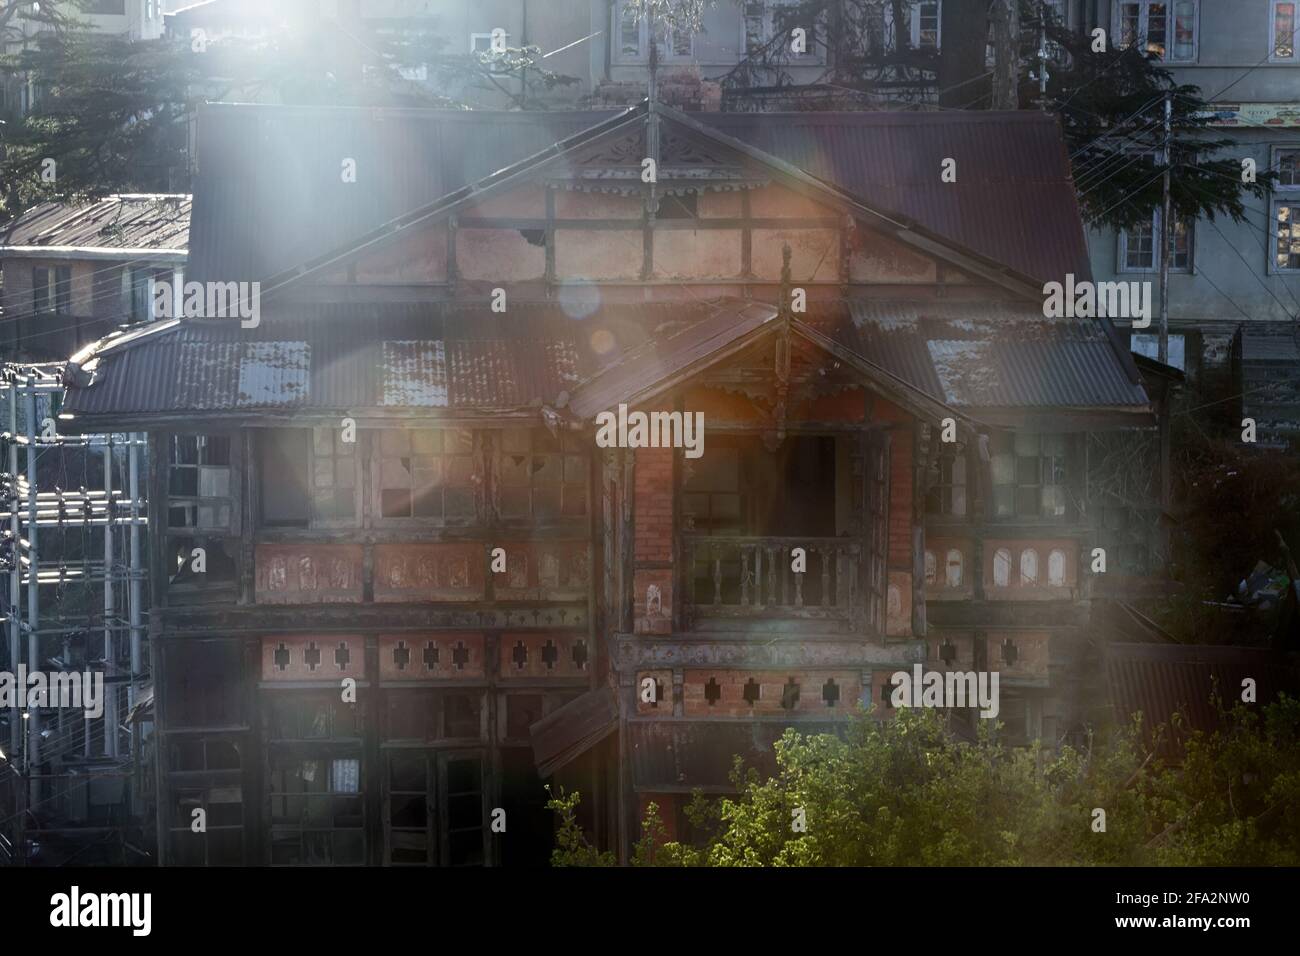 Maisons de la ville de Shimla du XVIIIe siècle - signes de destruction de l'ancienne capitale estivale de l'ancienne Inde britannique. Contre-feu Banque D'Images